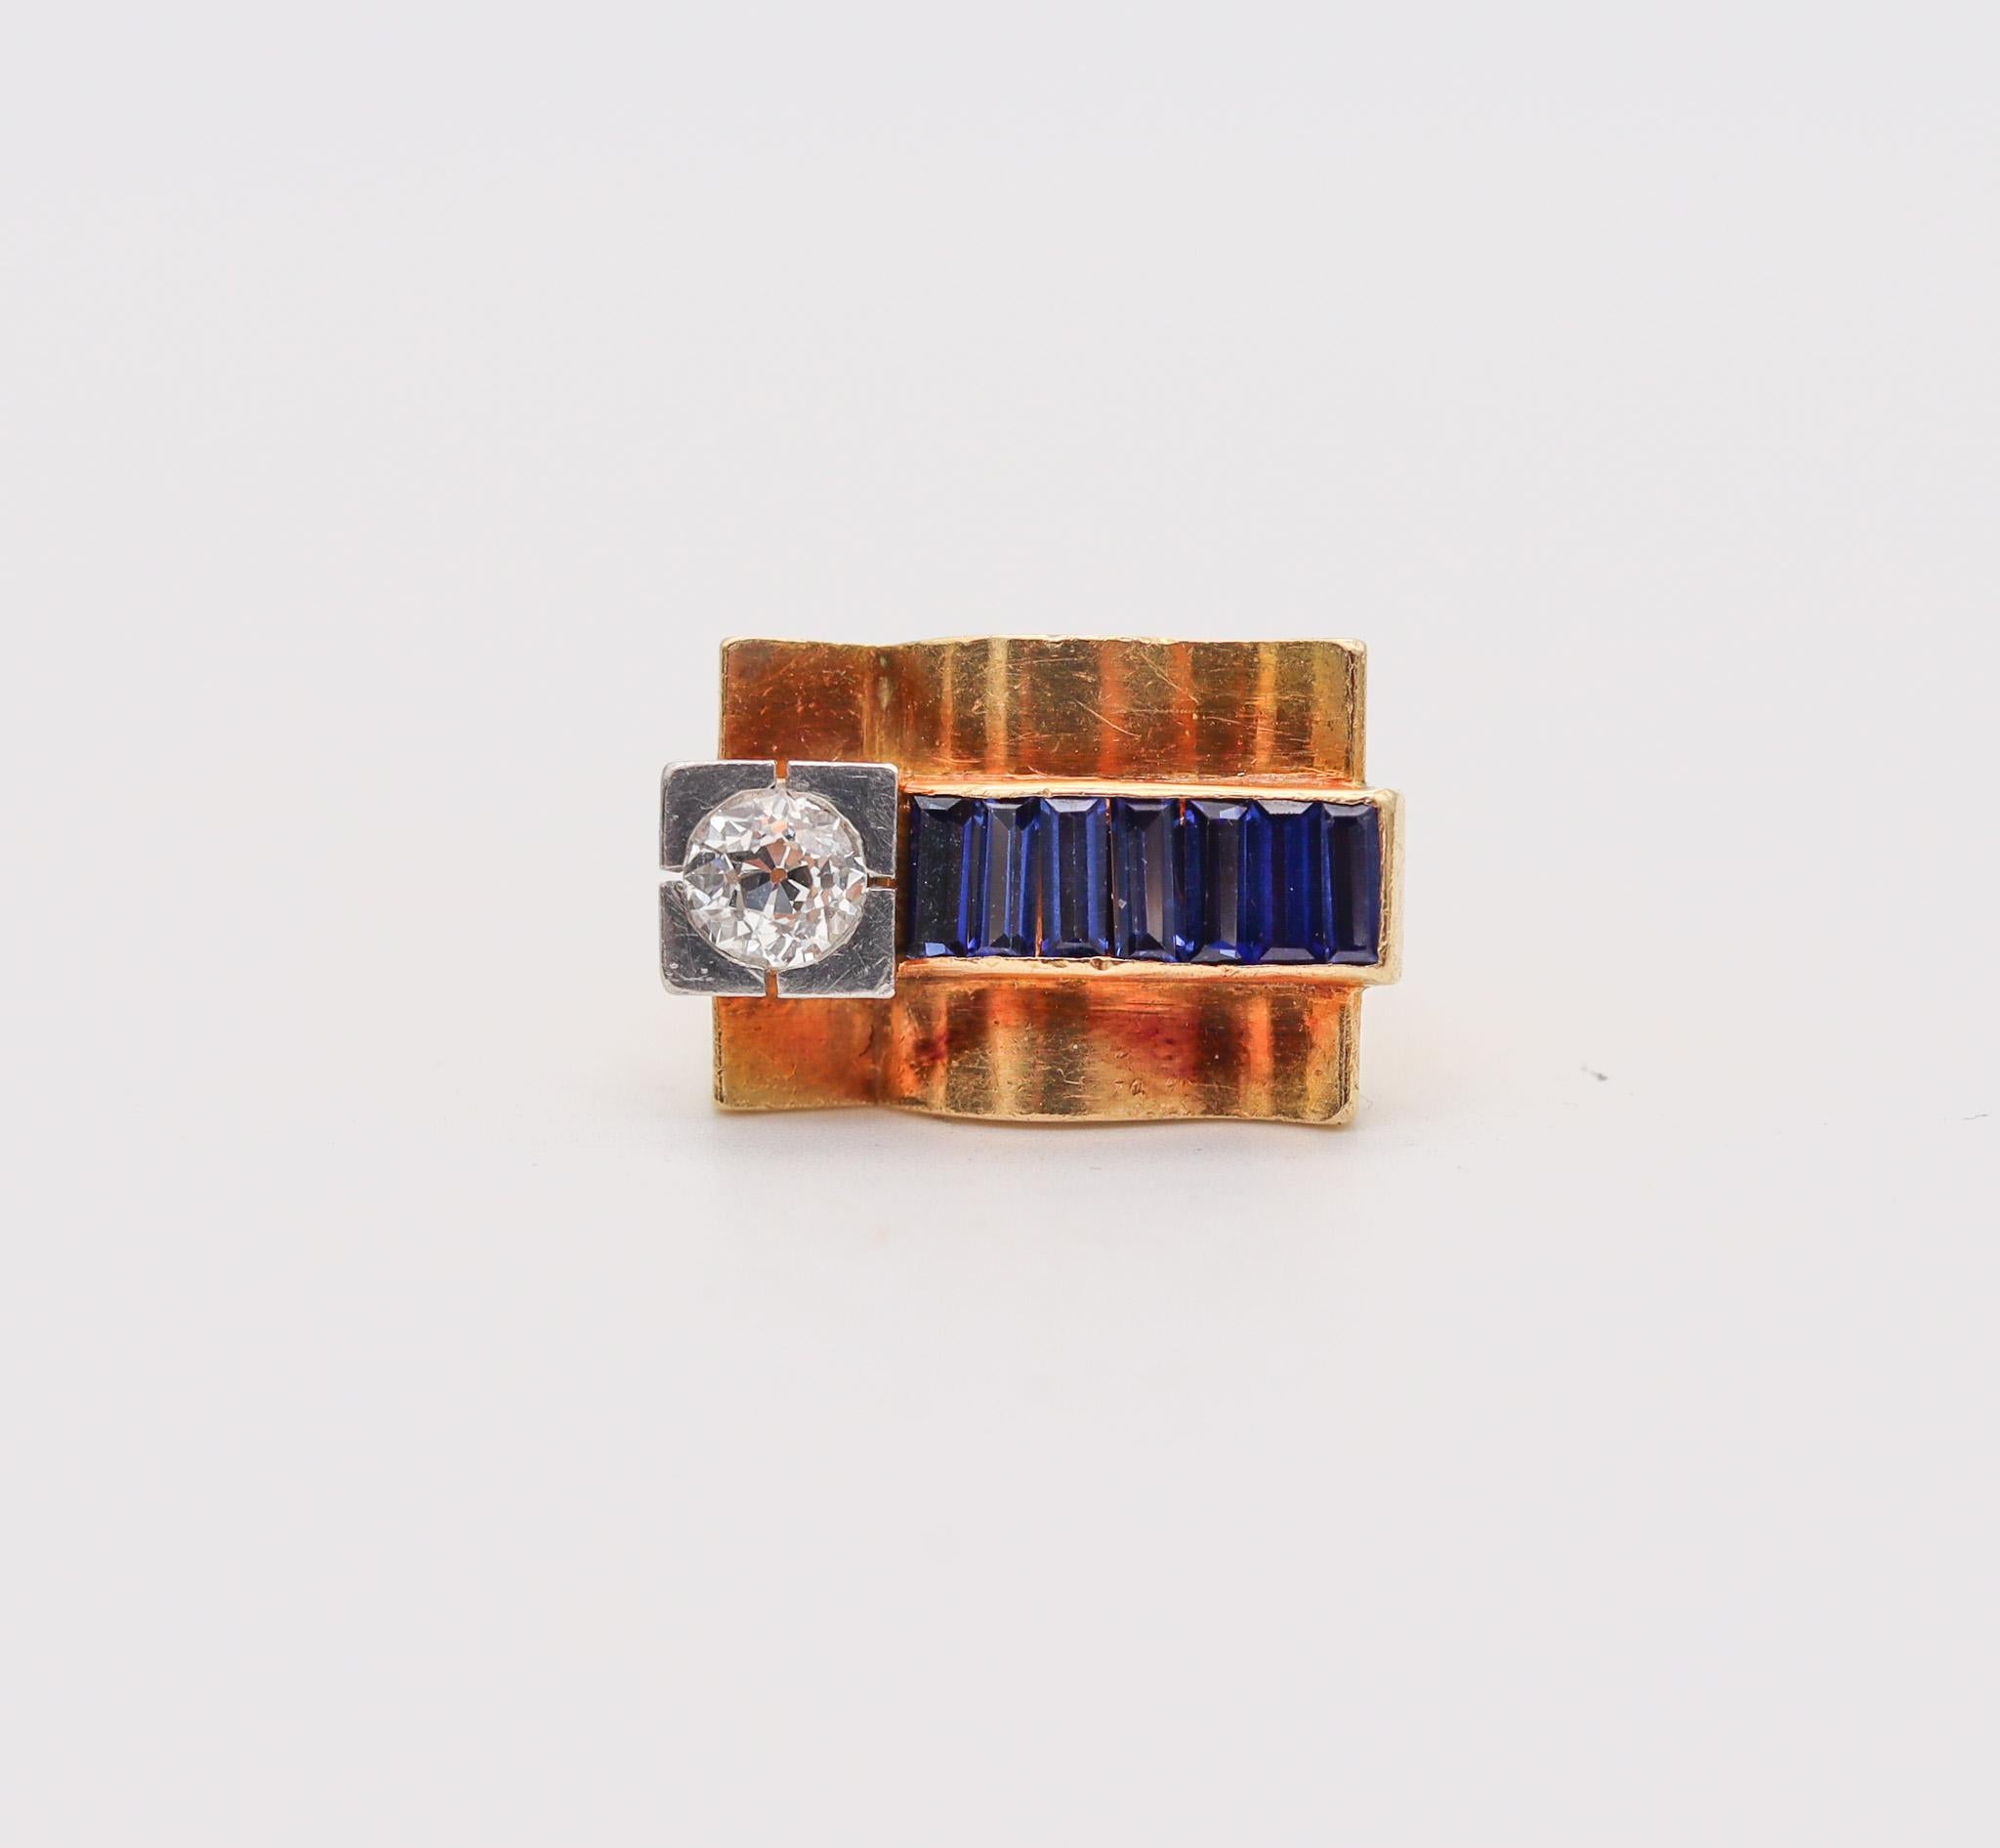 Ein geometrischer Chevalier-Ring aus der Zeit des Retro-Maschinenzeitalters.

Großartiger Chevalier-Ring, der während der späten Art-déco- und der Retro-Periode im Jahr 1935 entstand. Dieser geometrische Ring wurde mit kühnen volumetrischen Mustern